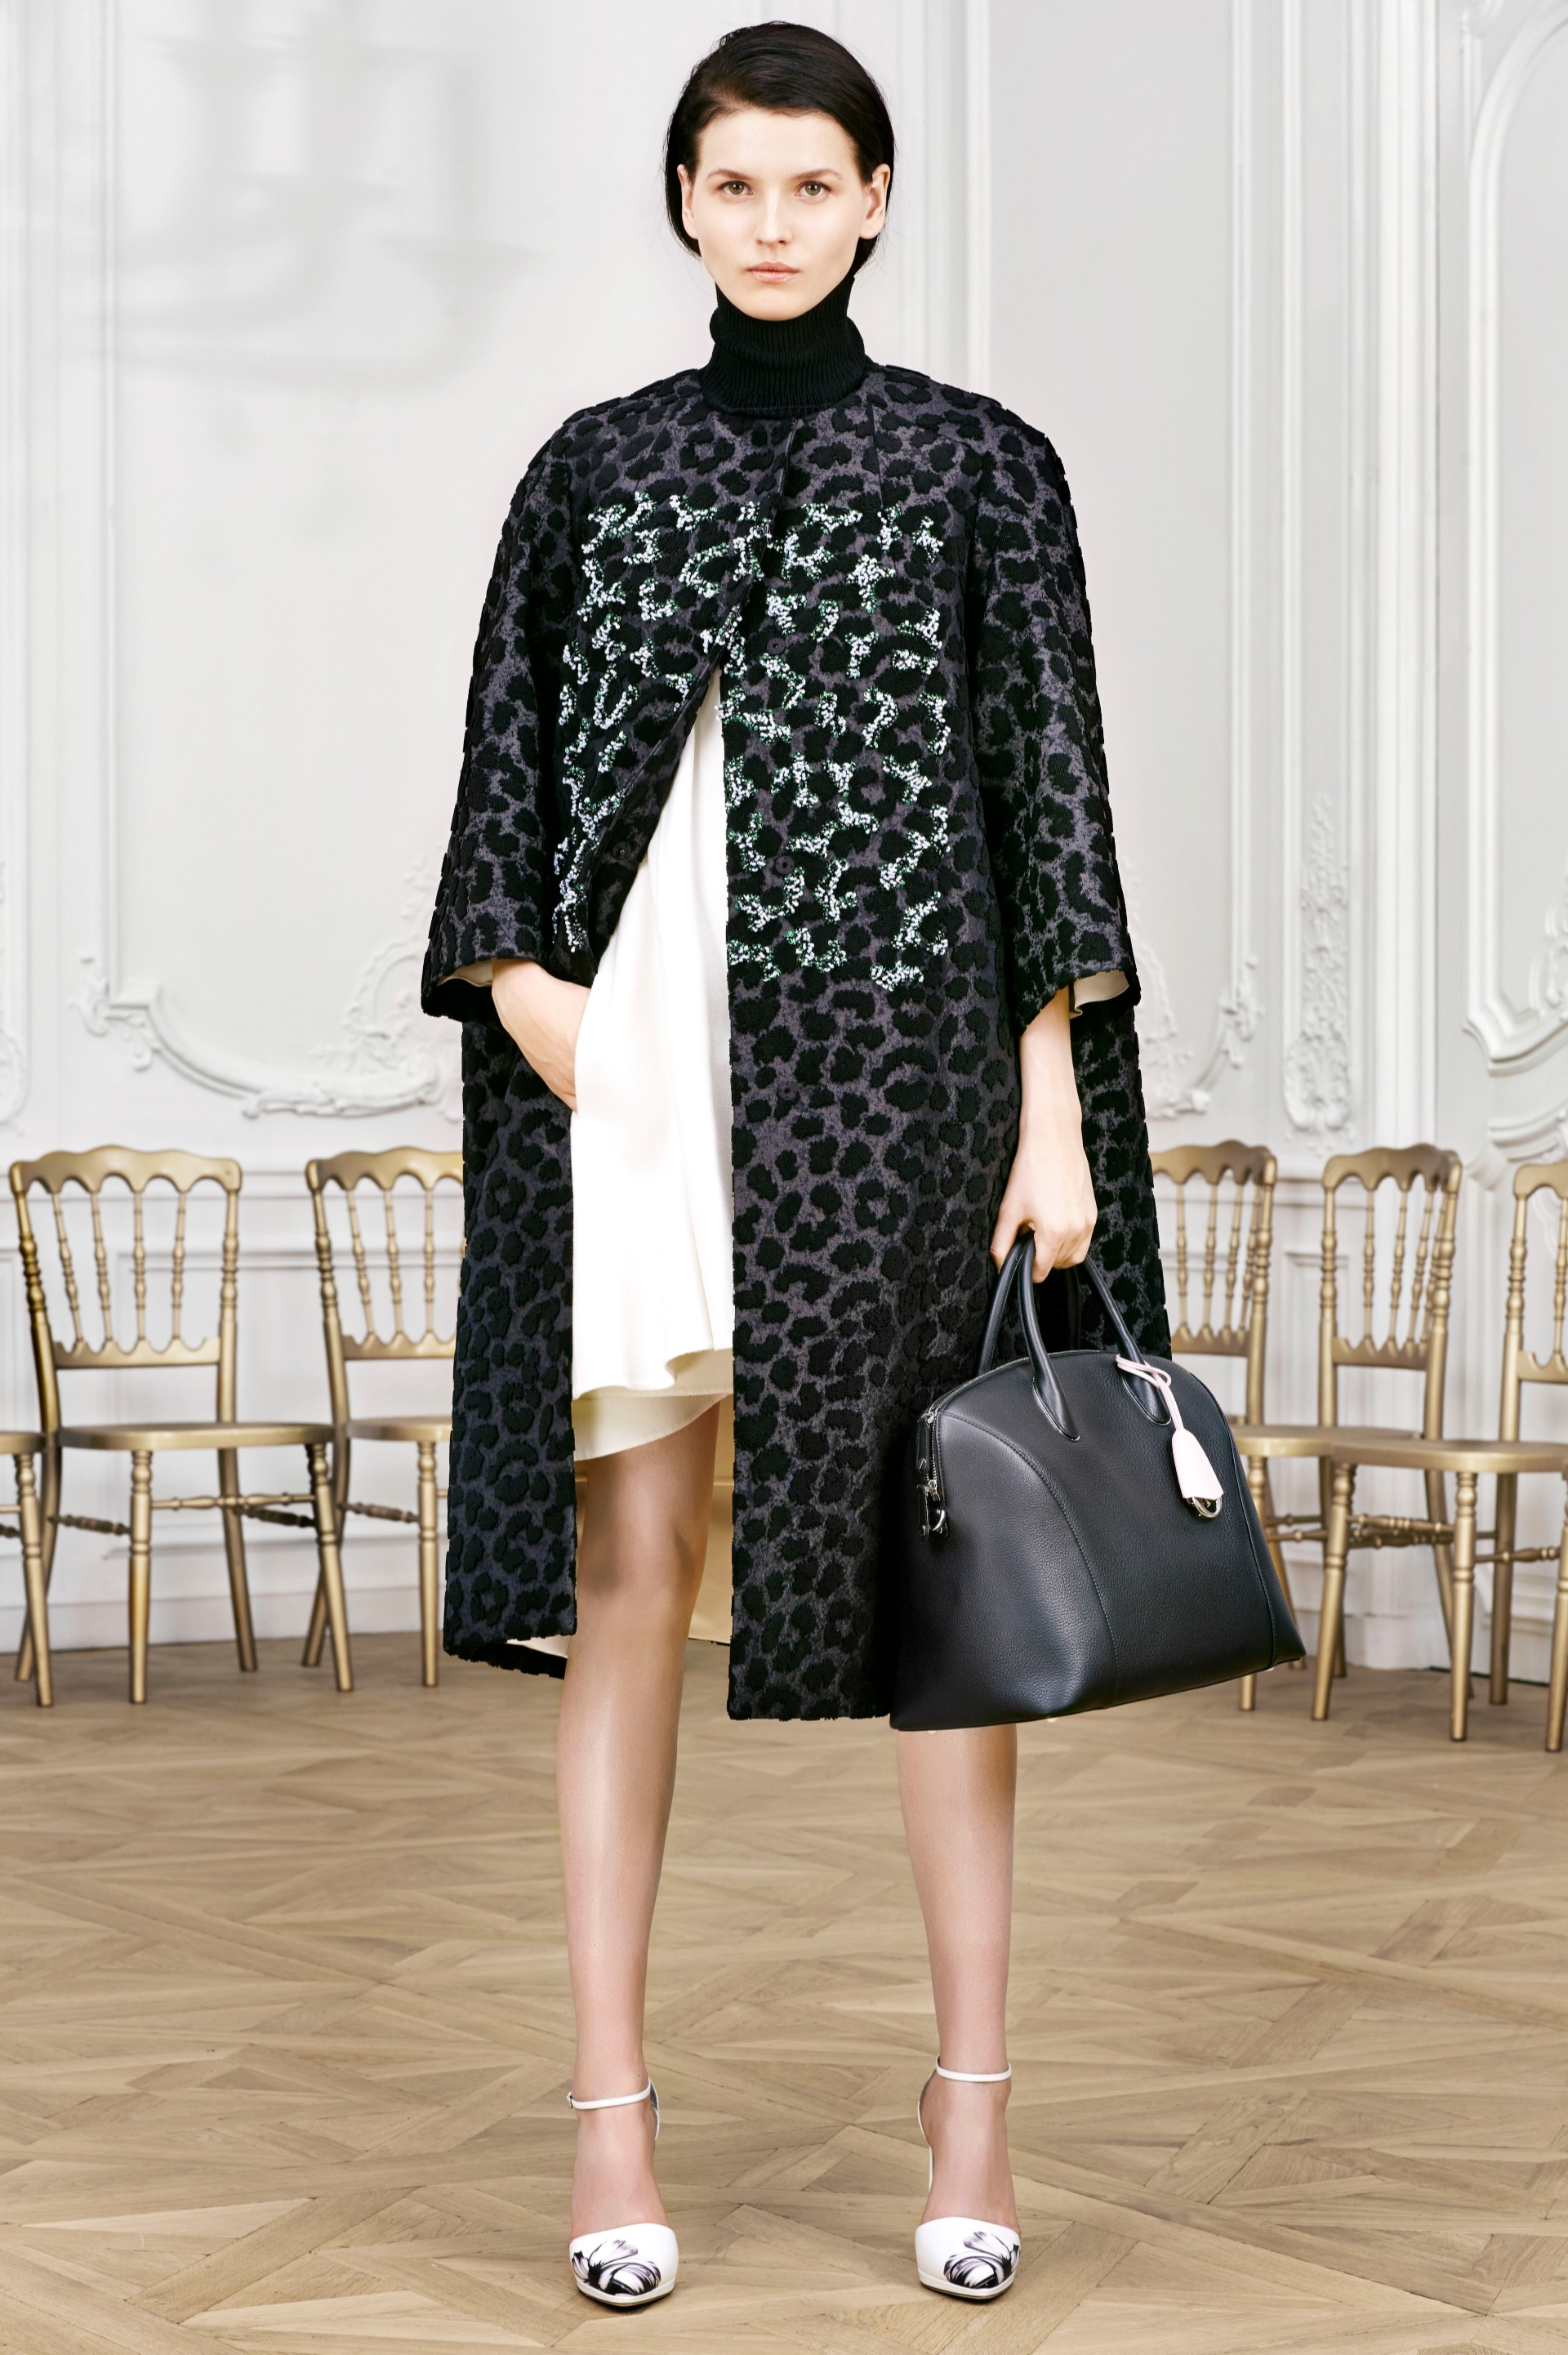 Пальто с леопардовым принтом, созданное Ральфом Симонсом, показ Christian Dior 2014 год